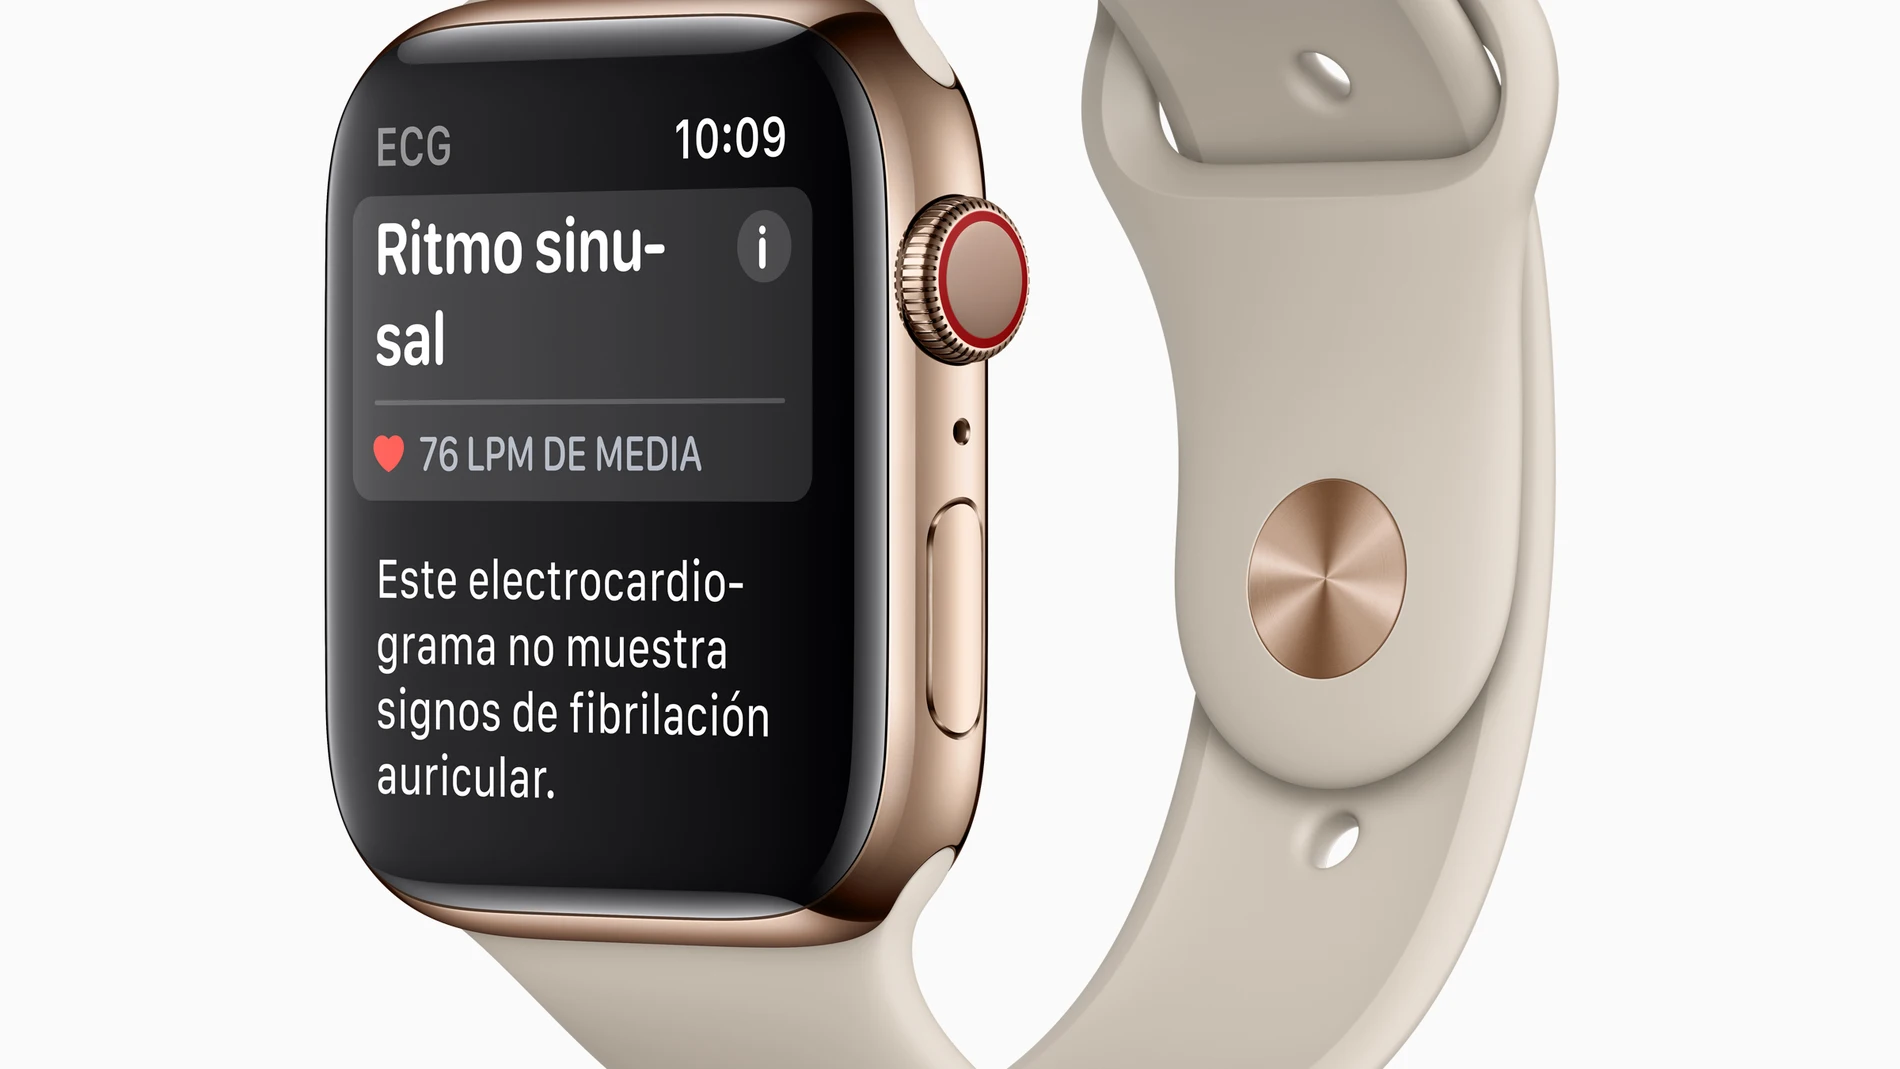 Apple ha solicitado a la FDA el título de dispositivo médico para su reloj, basado en la funcionalidad de recogida de datos cardiacos